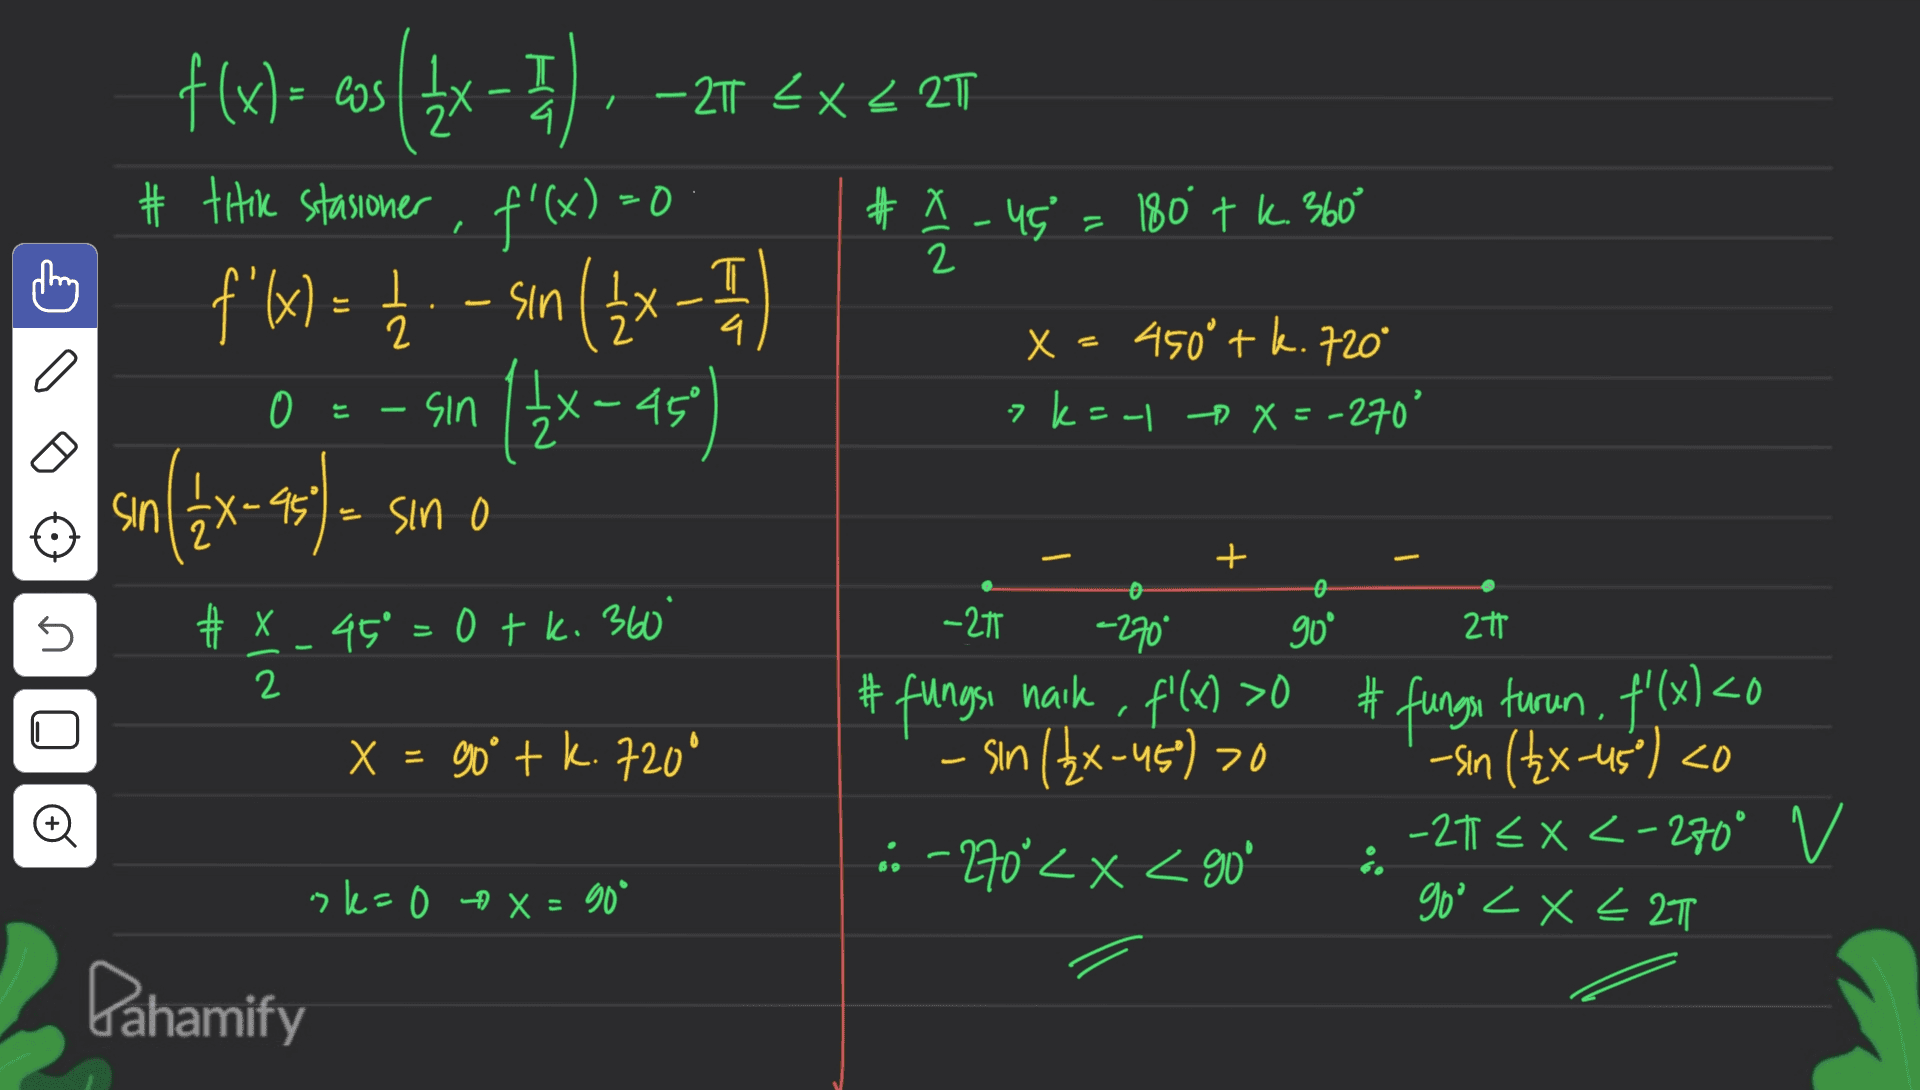 T 4. / - T EX < 2T f(x) = cos({x- # titik stasioner , f'(x)=0 f'x) = 12 - sin ( 2x - 1 14 T # X-45 180 tk. 360 2 x=450° tk. 720° 7 k=-1 X=-270' 0 는 sin X-45° sin ( 1 & X-95 (2x- X Sin 0 5 -21 -270* 90° 2t # x 0 k # x 45° =0 tk. 360° 2 X = 90° + k.720° NIX #fungsi naik , f'(x) >O sin (2x-45) >0 n o 20 # fungsi turun, f'(x) <0 -sin (2x-45°) <0 -21 EX <-270° v goo <x< 2T .: -270°< X < 90° sler 0 + x = 90° Dahamify 